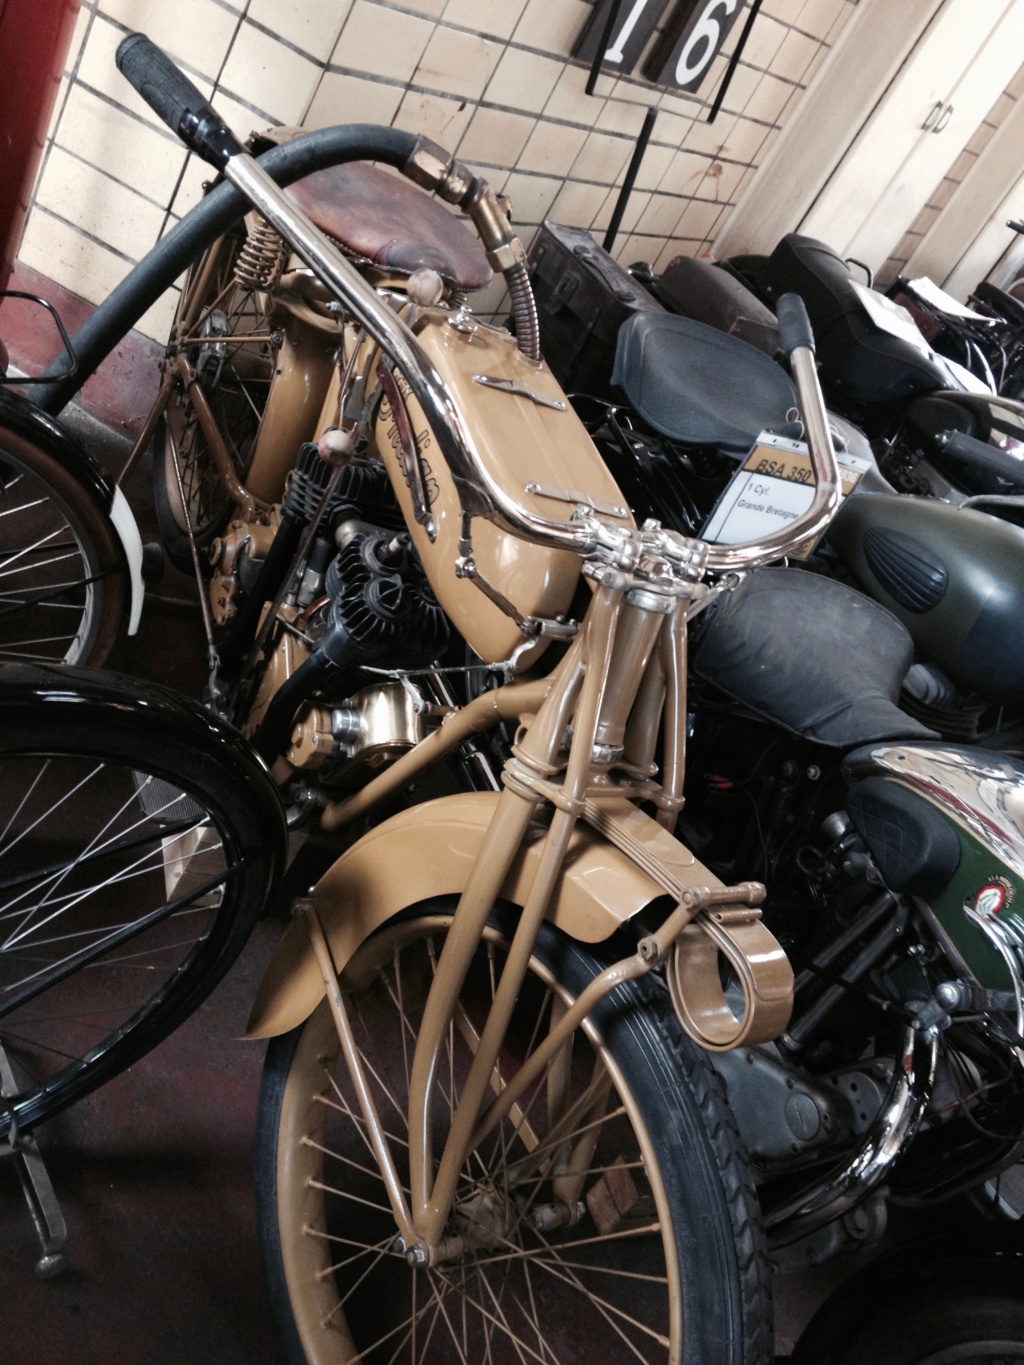 Balade improvisé au musée des motos anciennes a Habay-la-Neuve (Belgique) Img_5025